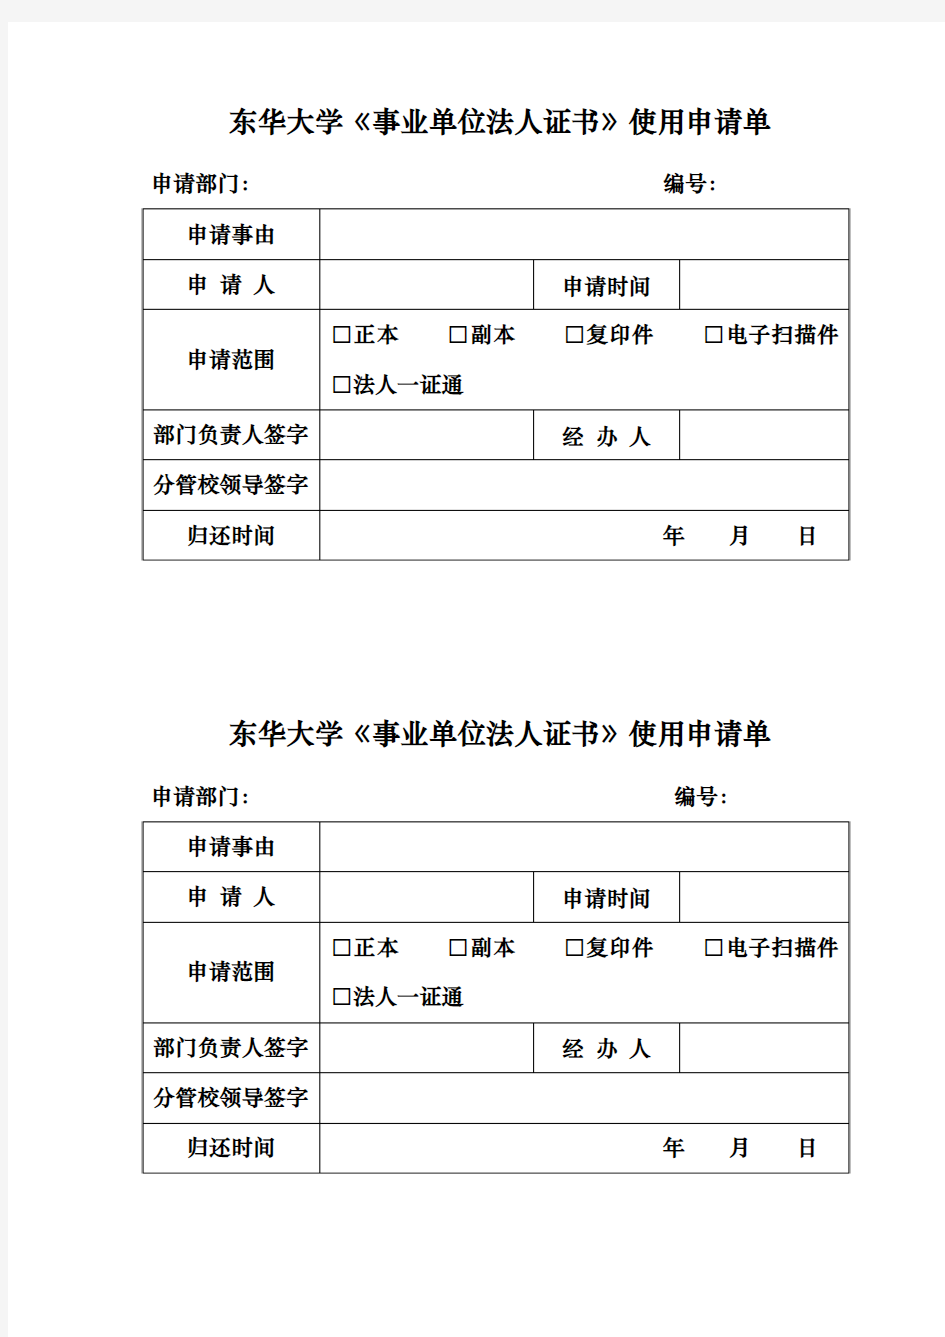 东华大学事业单位法人证书使用申请单